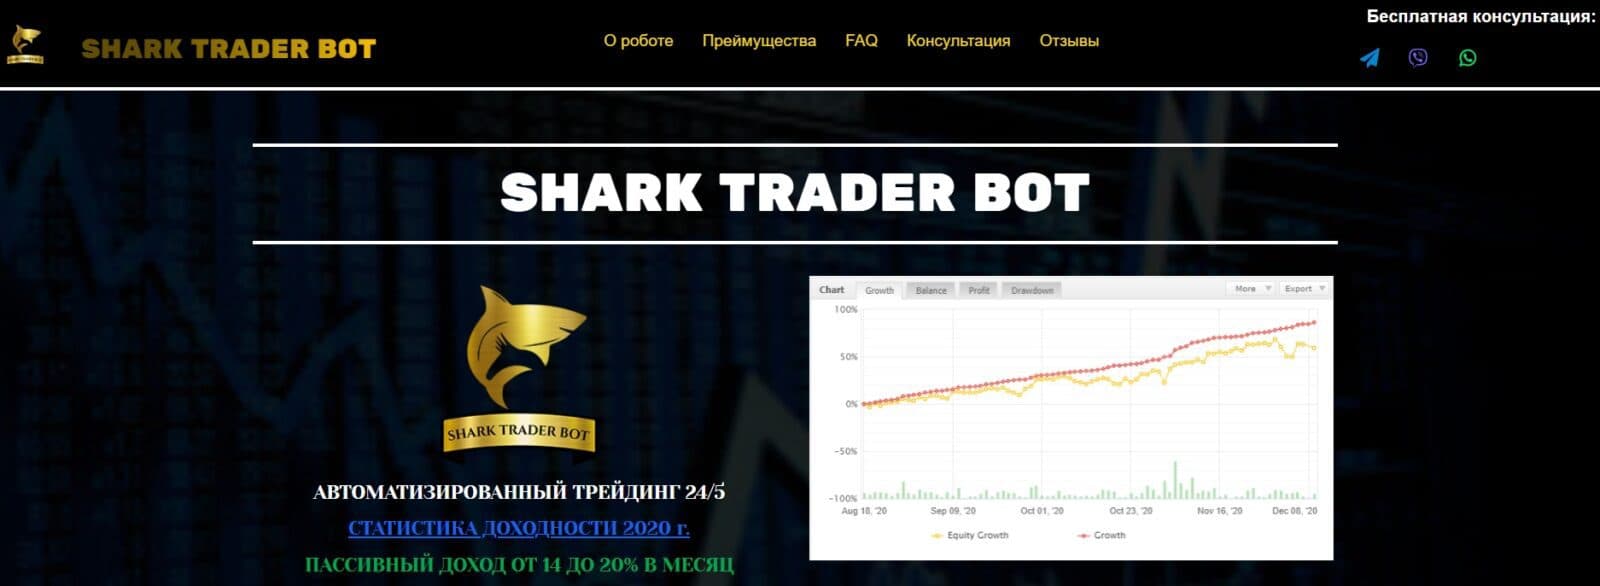 Торговый бот Shark Trader Bot